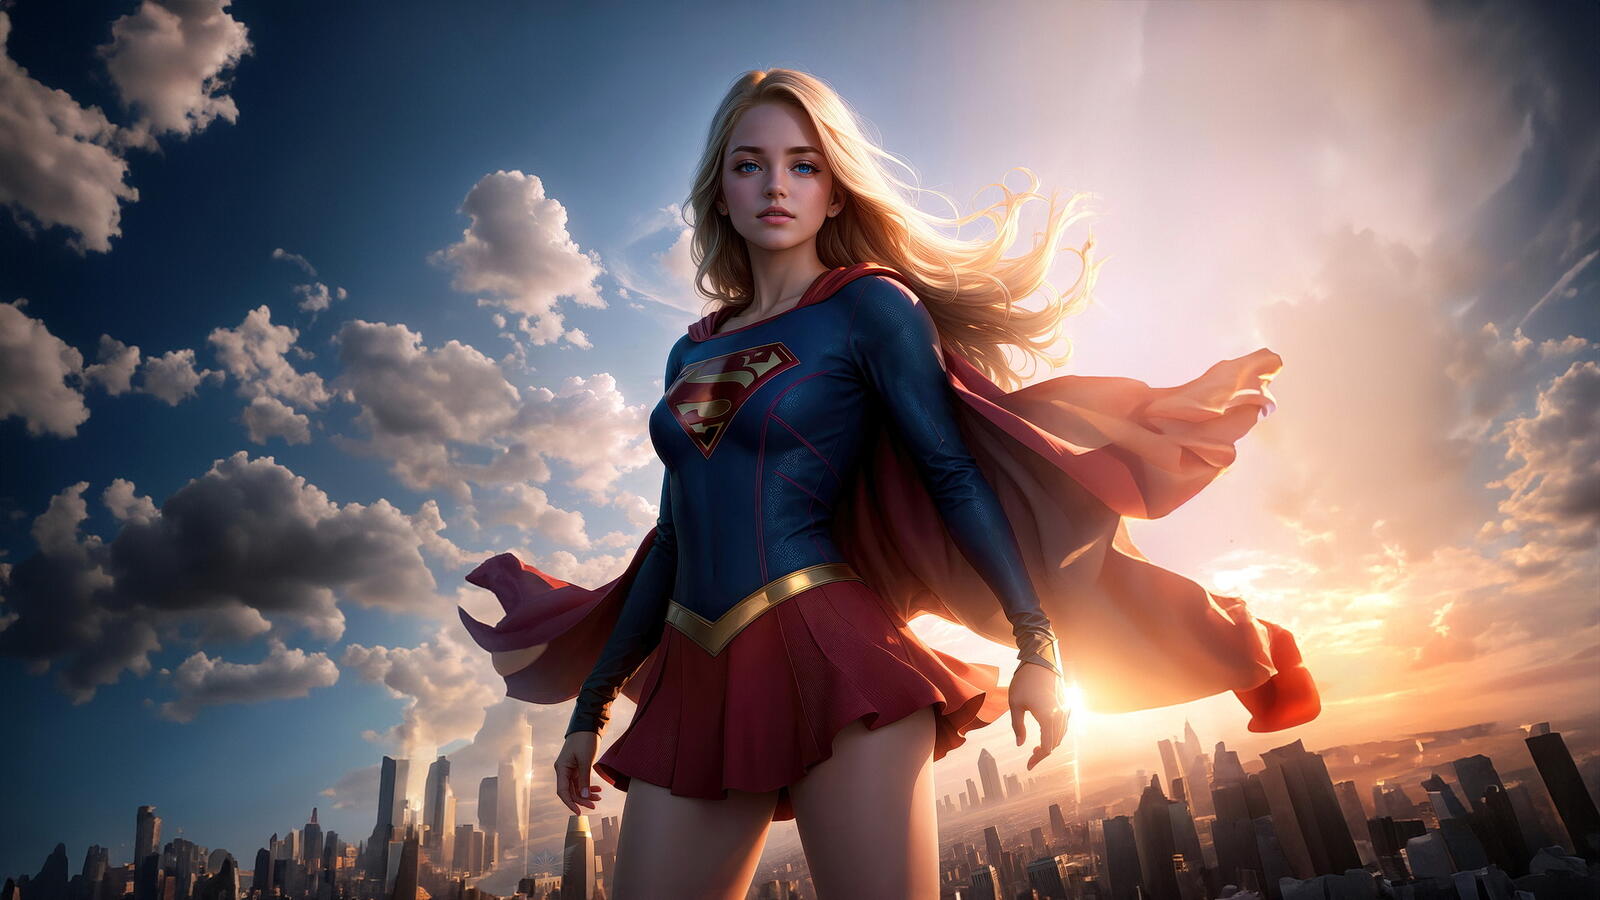 Бесплатное фото Супер девушка на фоне города и неба